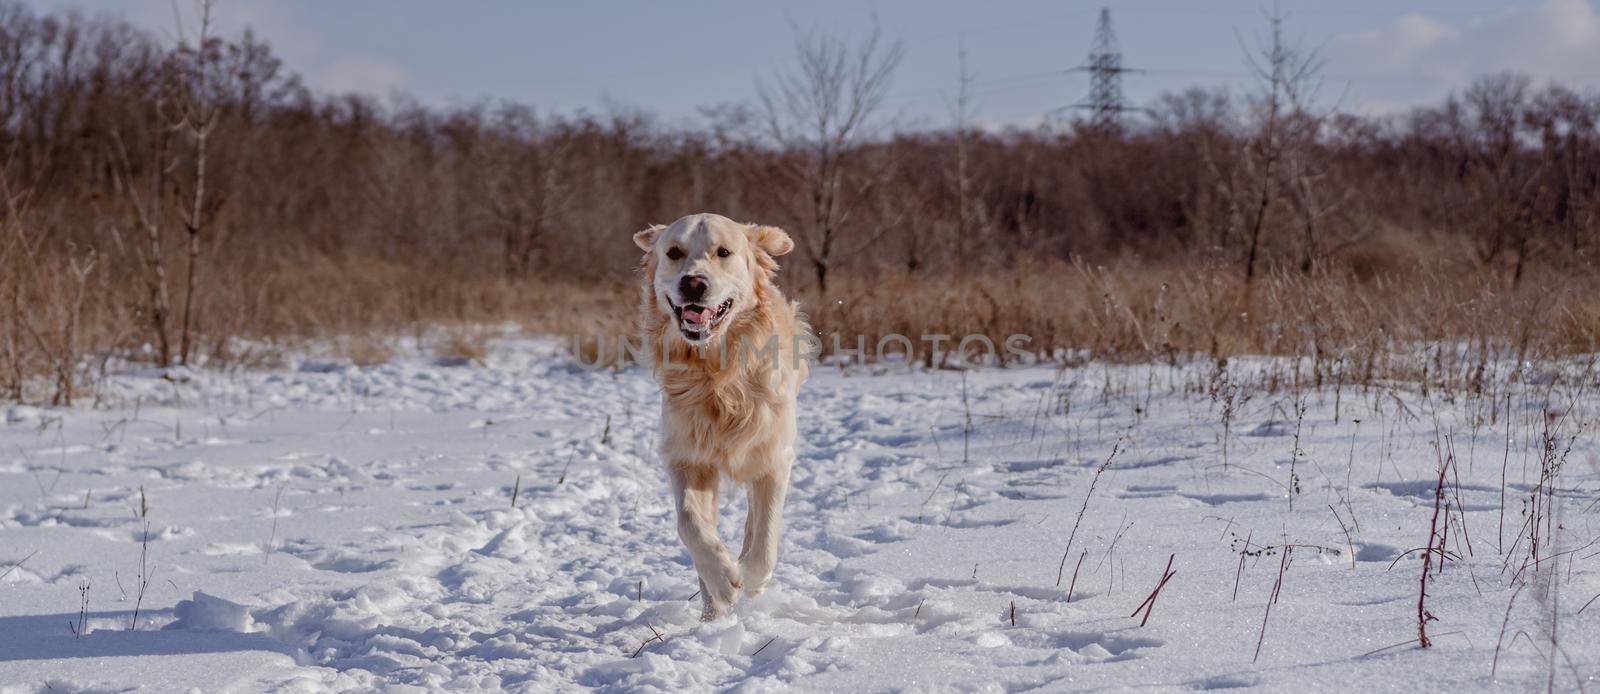 Golden retriever dog on winter nature by tan4ikk1